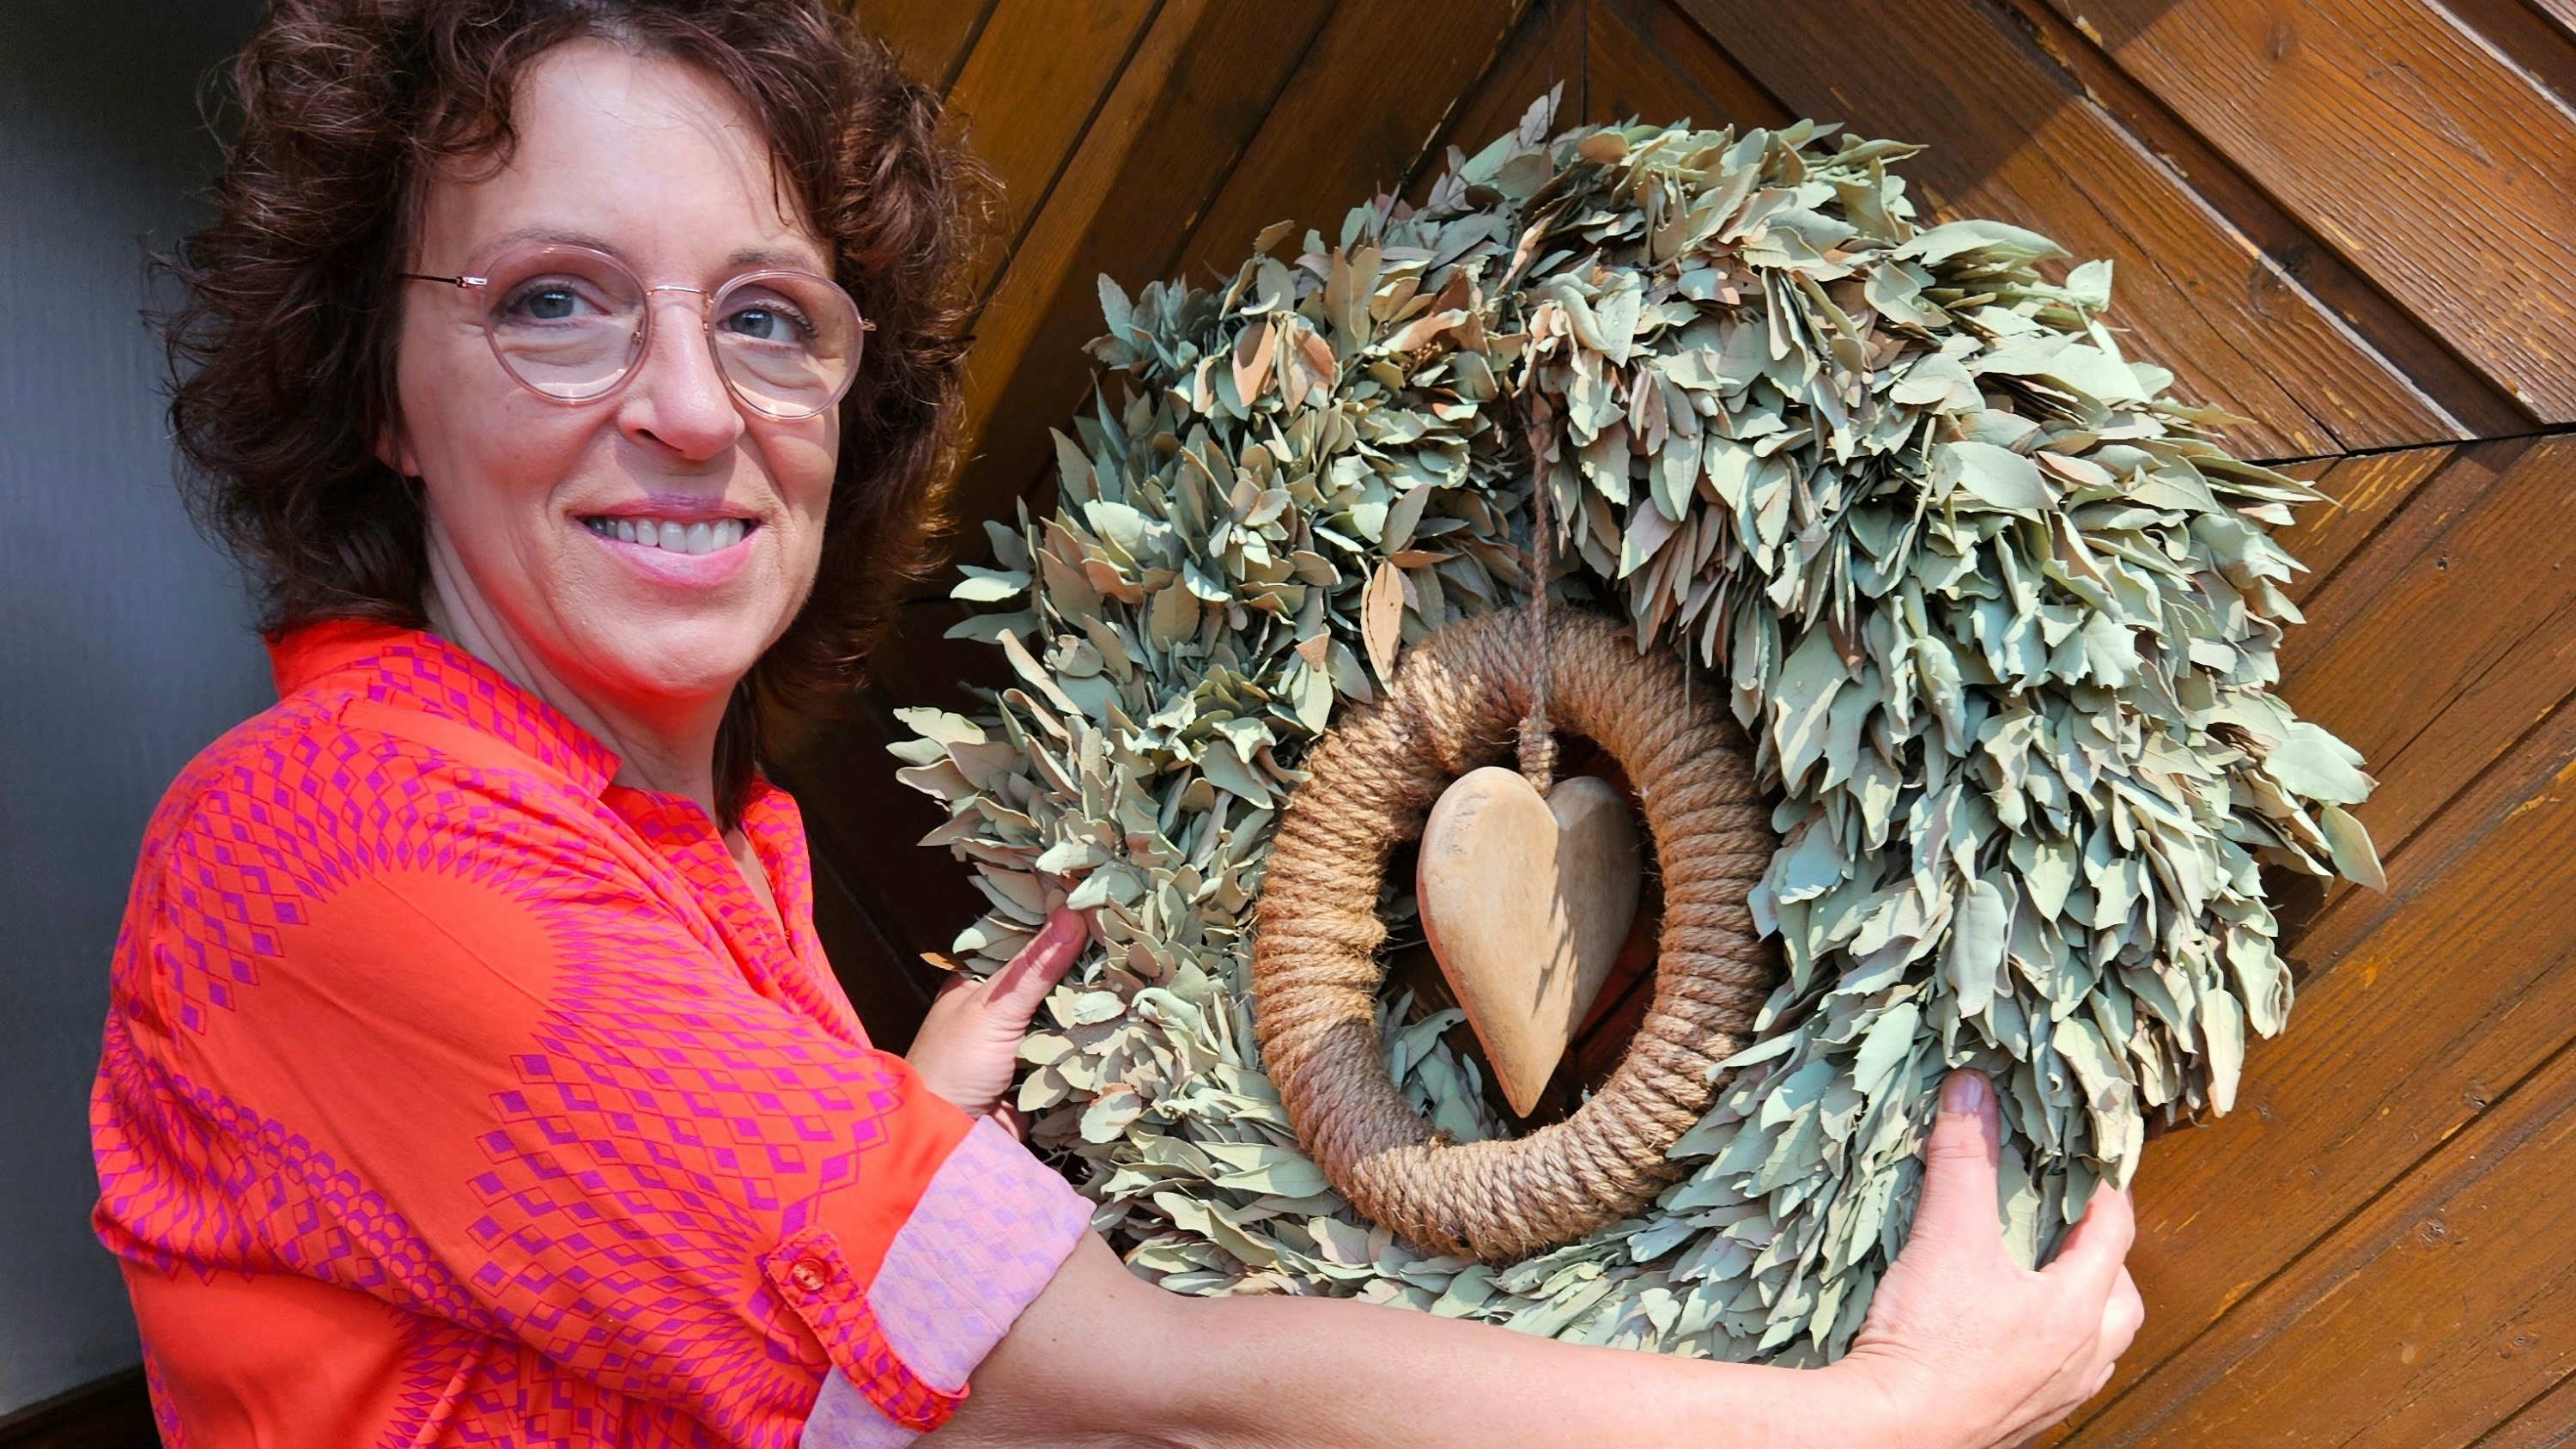 Hildegard Hermes liebt Pflanzen – in Workshops gibt die gelernte Floristin regelmäßig ihr Wissen und Erfahrungen weiter. Foto: Biegel